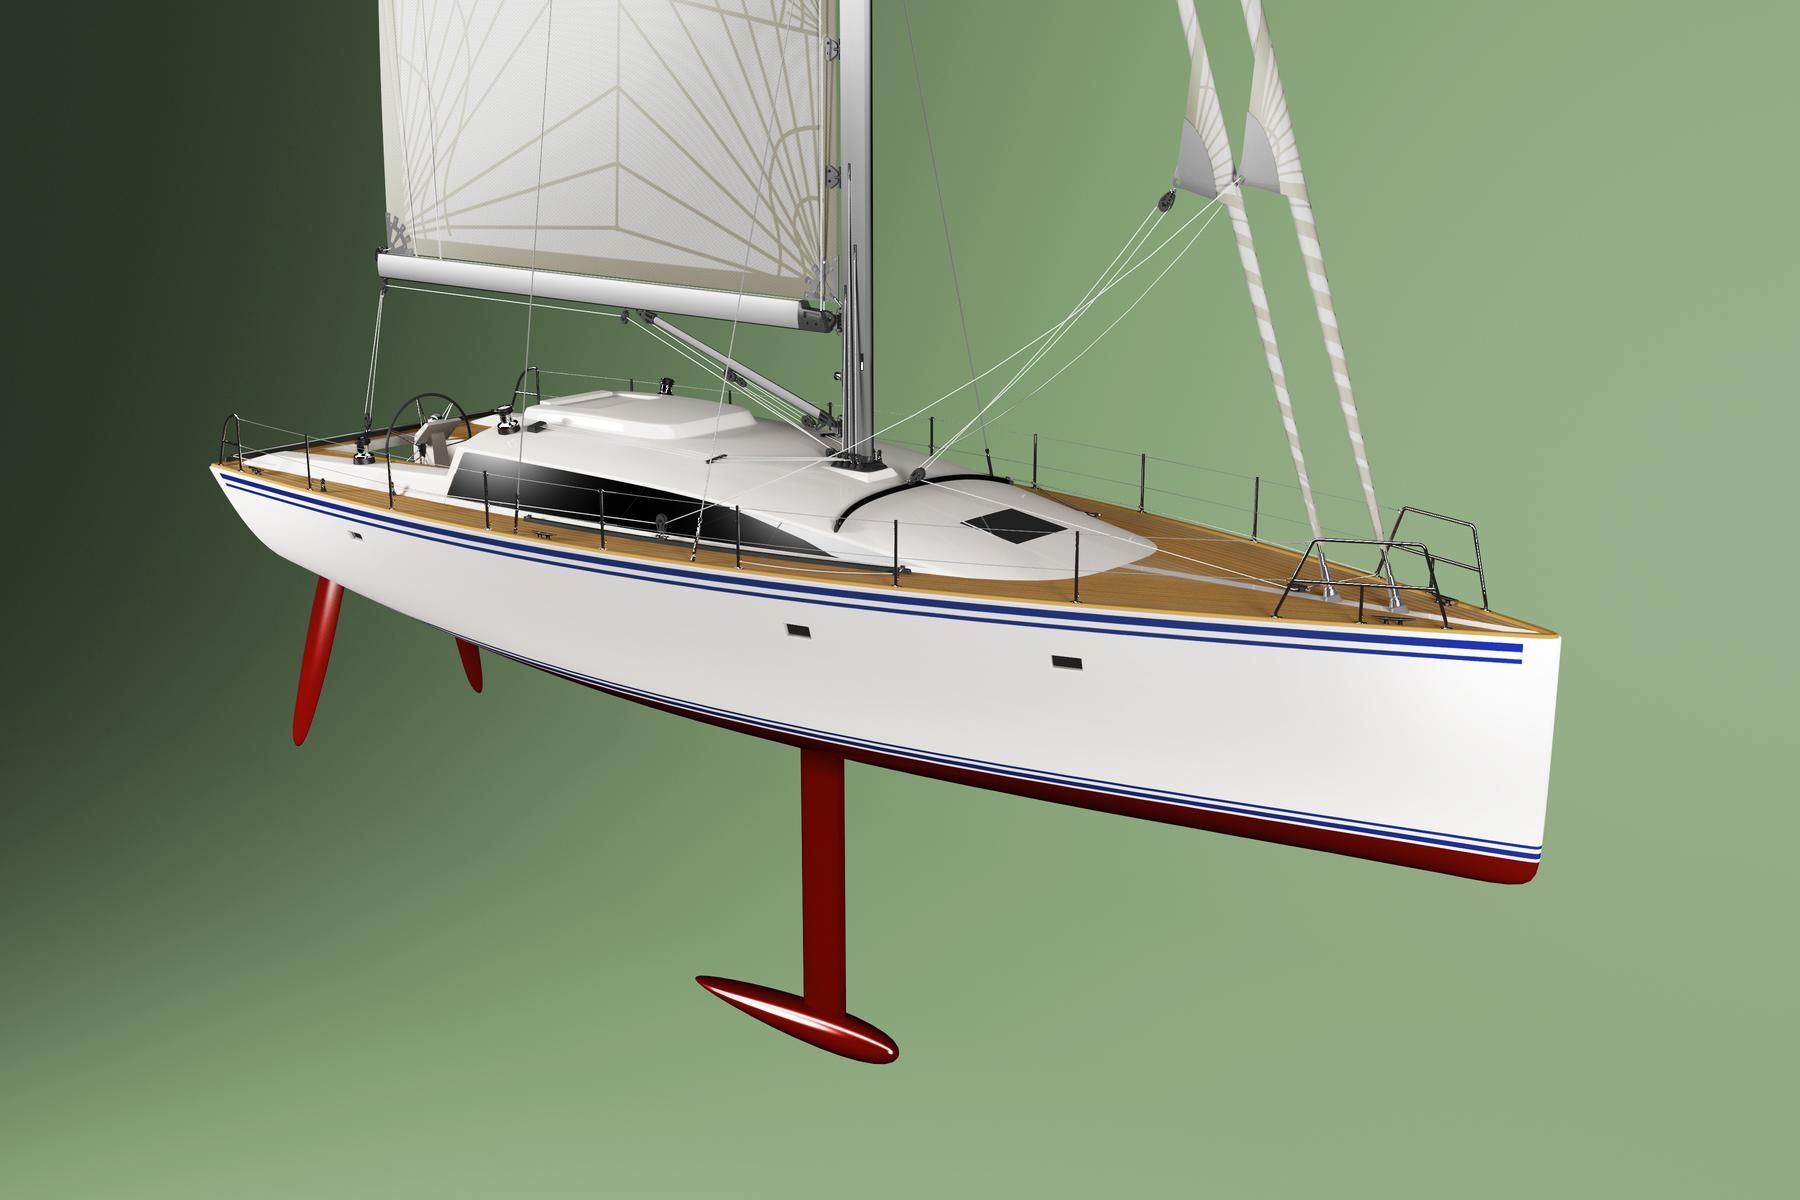 40 foot wooden sailboat